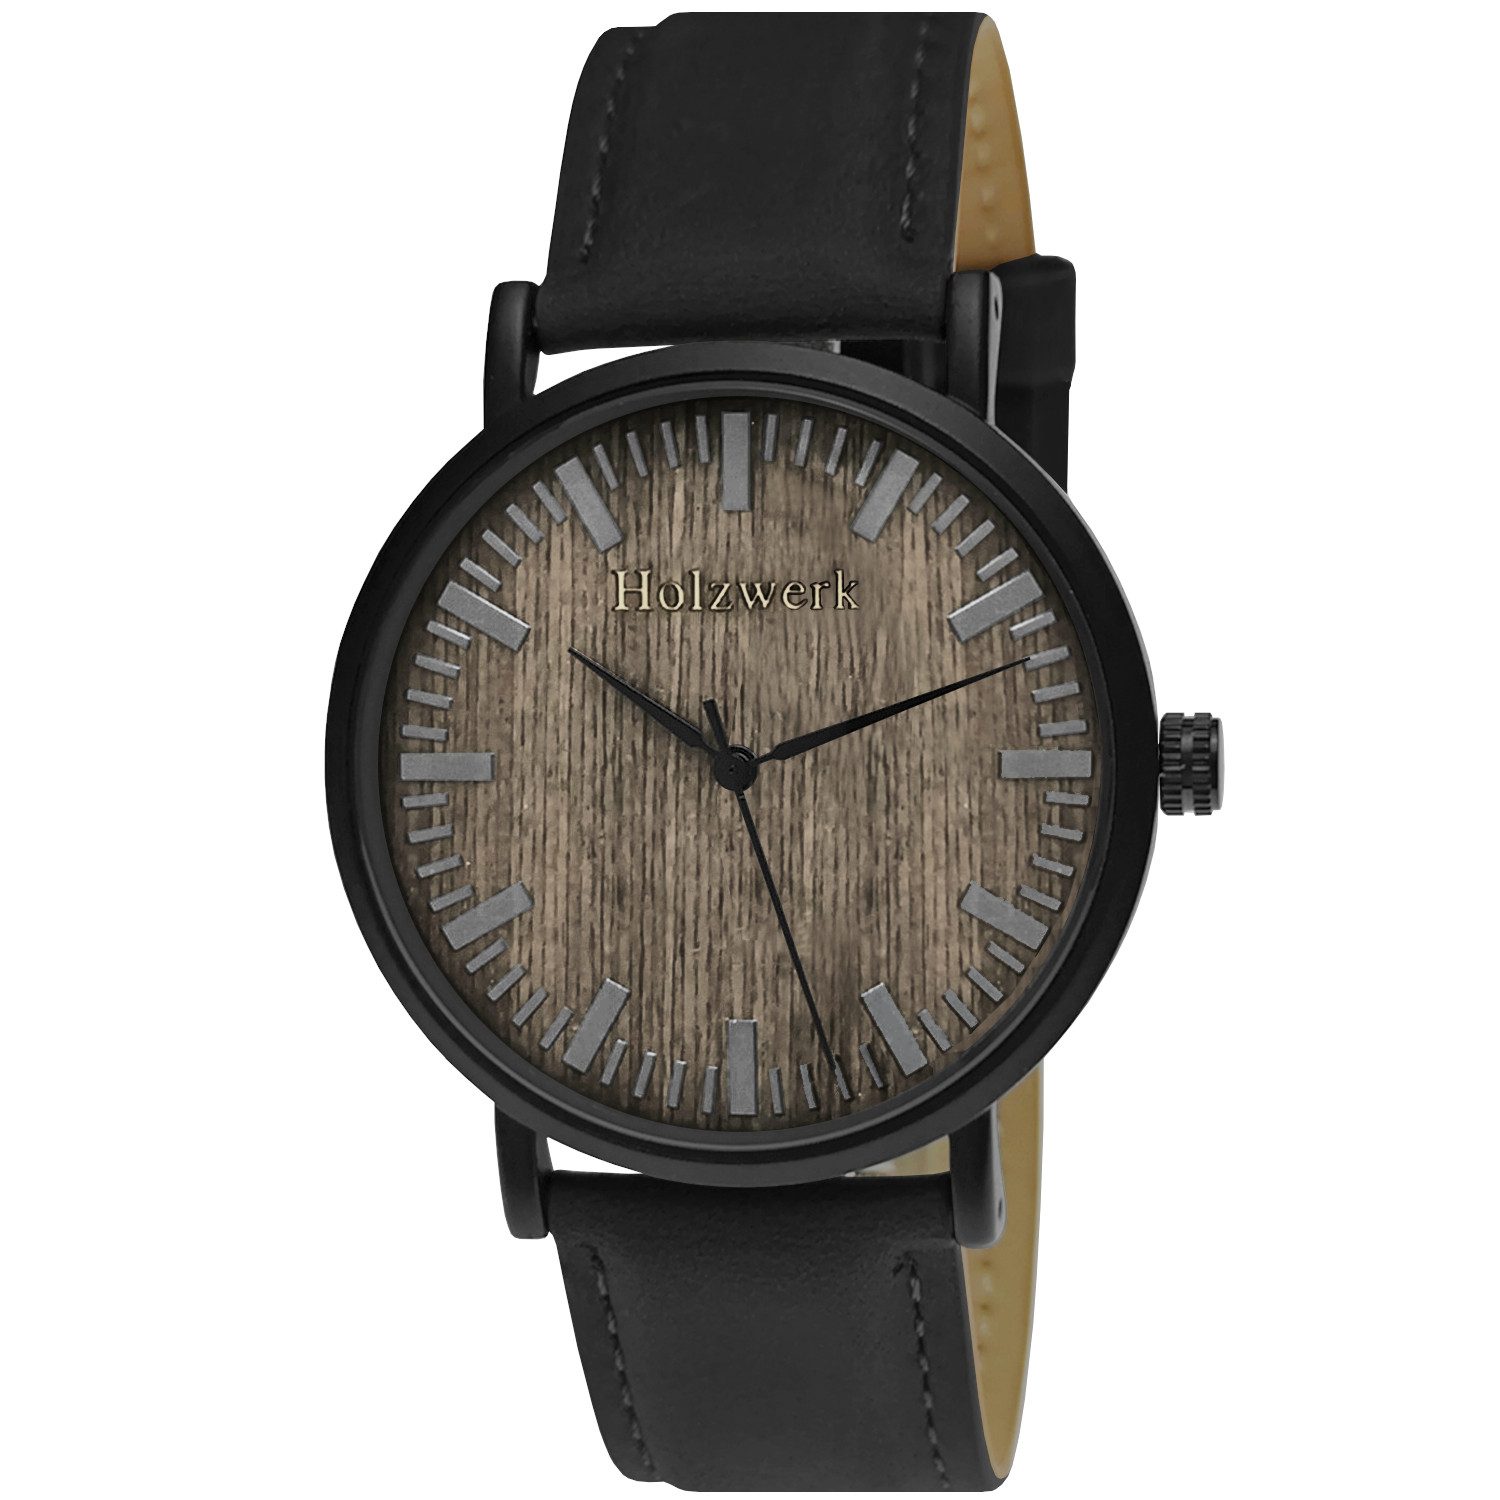 Holzwerk Quarzuhr Damen & Herren Edelstahl & Holz Uhr mit Leder Armband, schwarz, flaches 4 mm Gehäuse